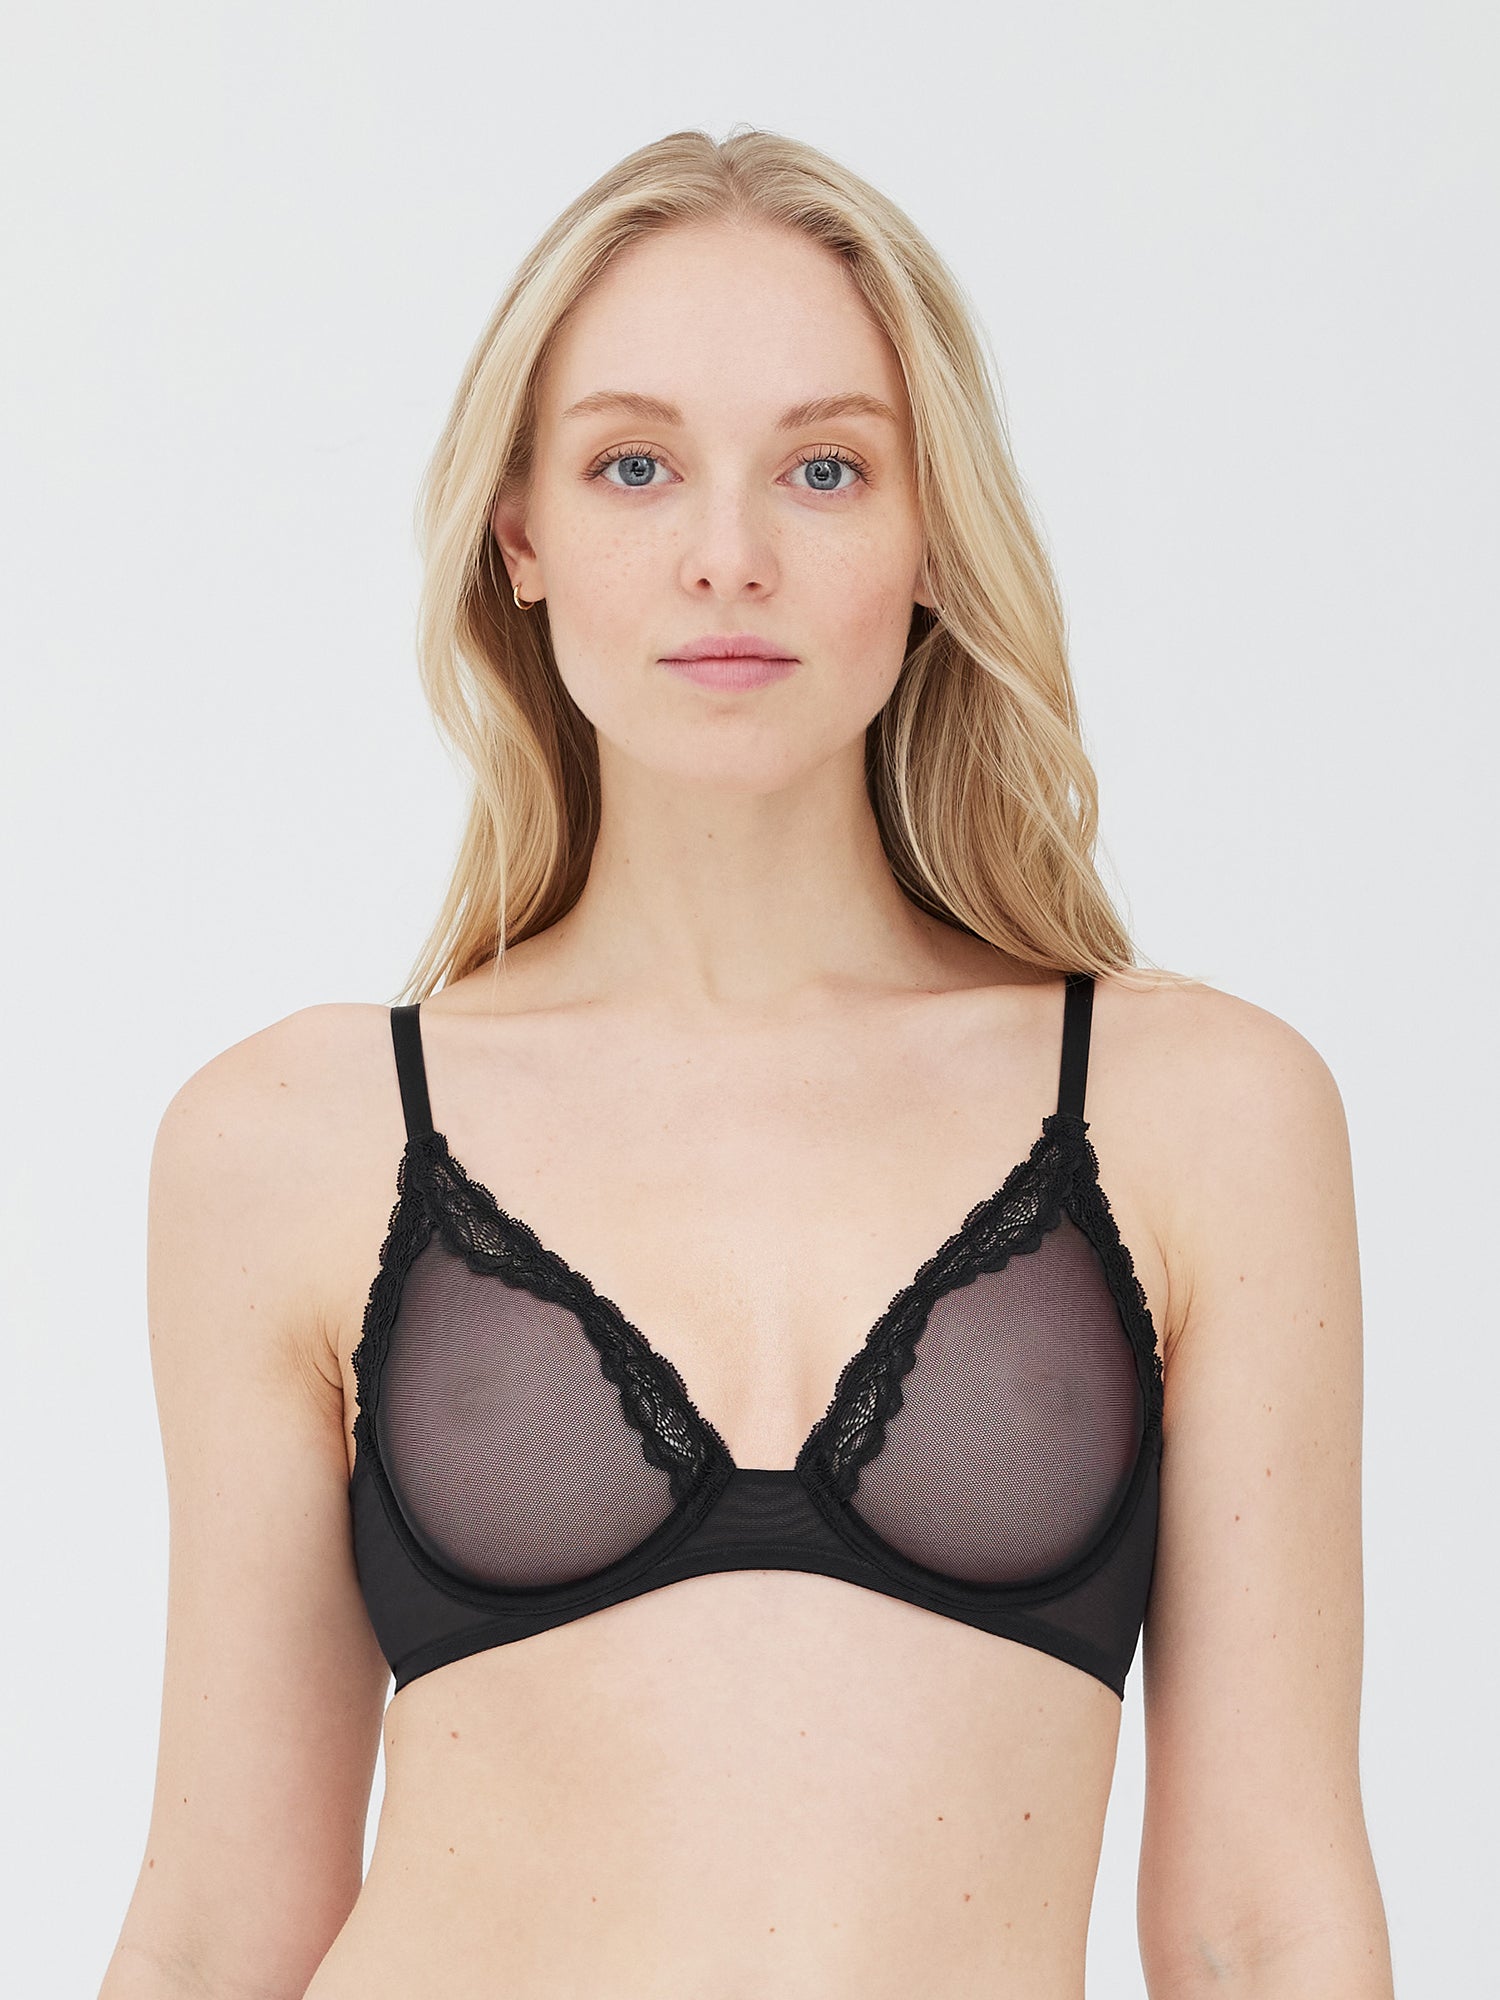 Women's underwear unlined underwire bras sexy mesh sheer triangle bralette unlined  bra top